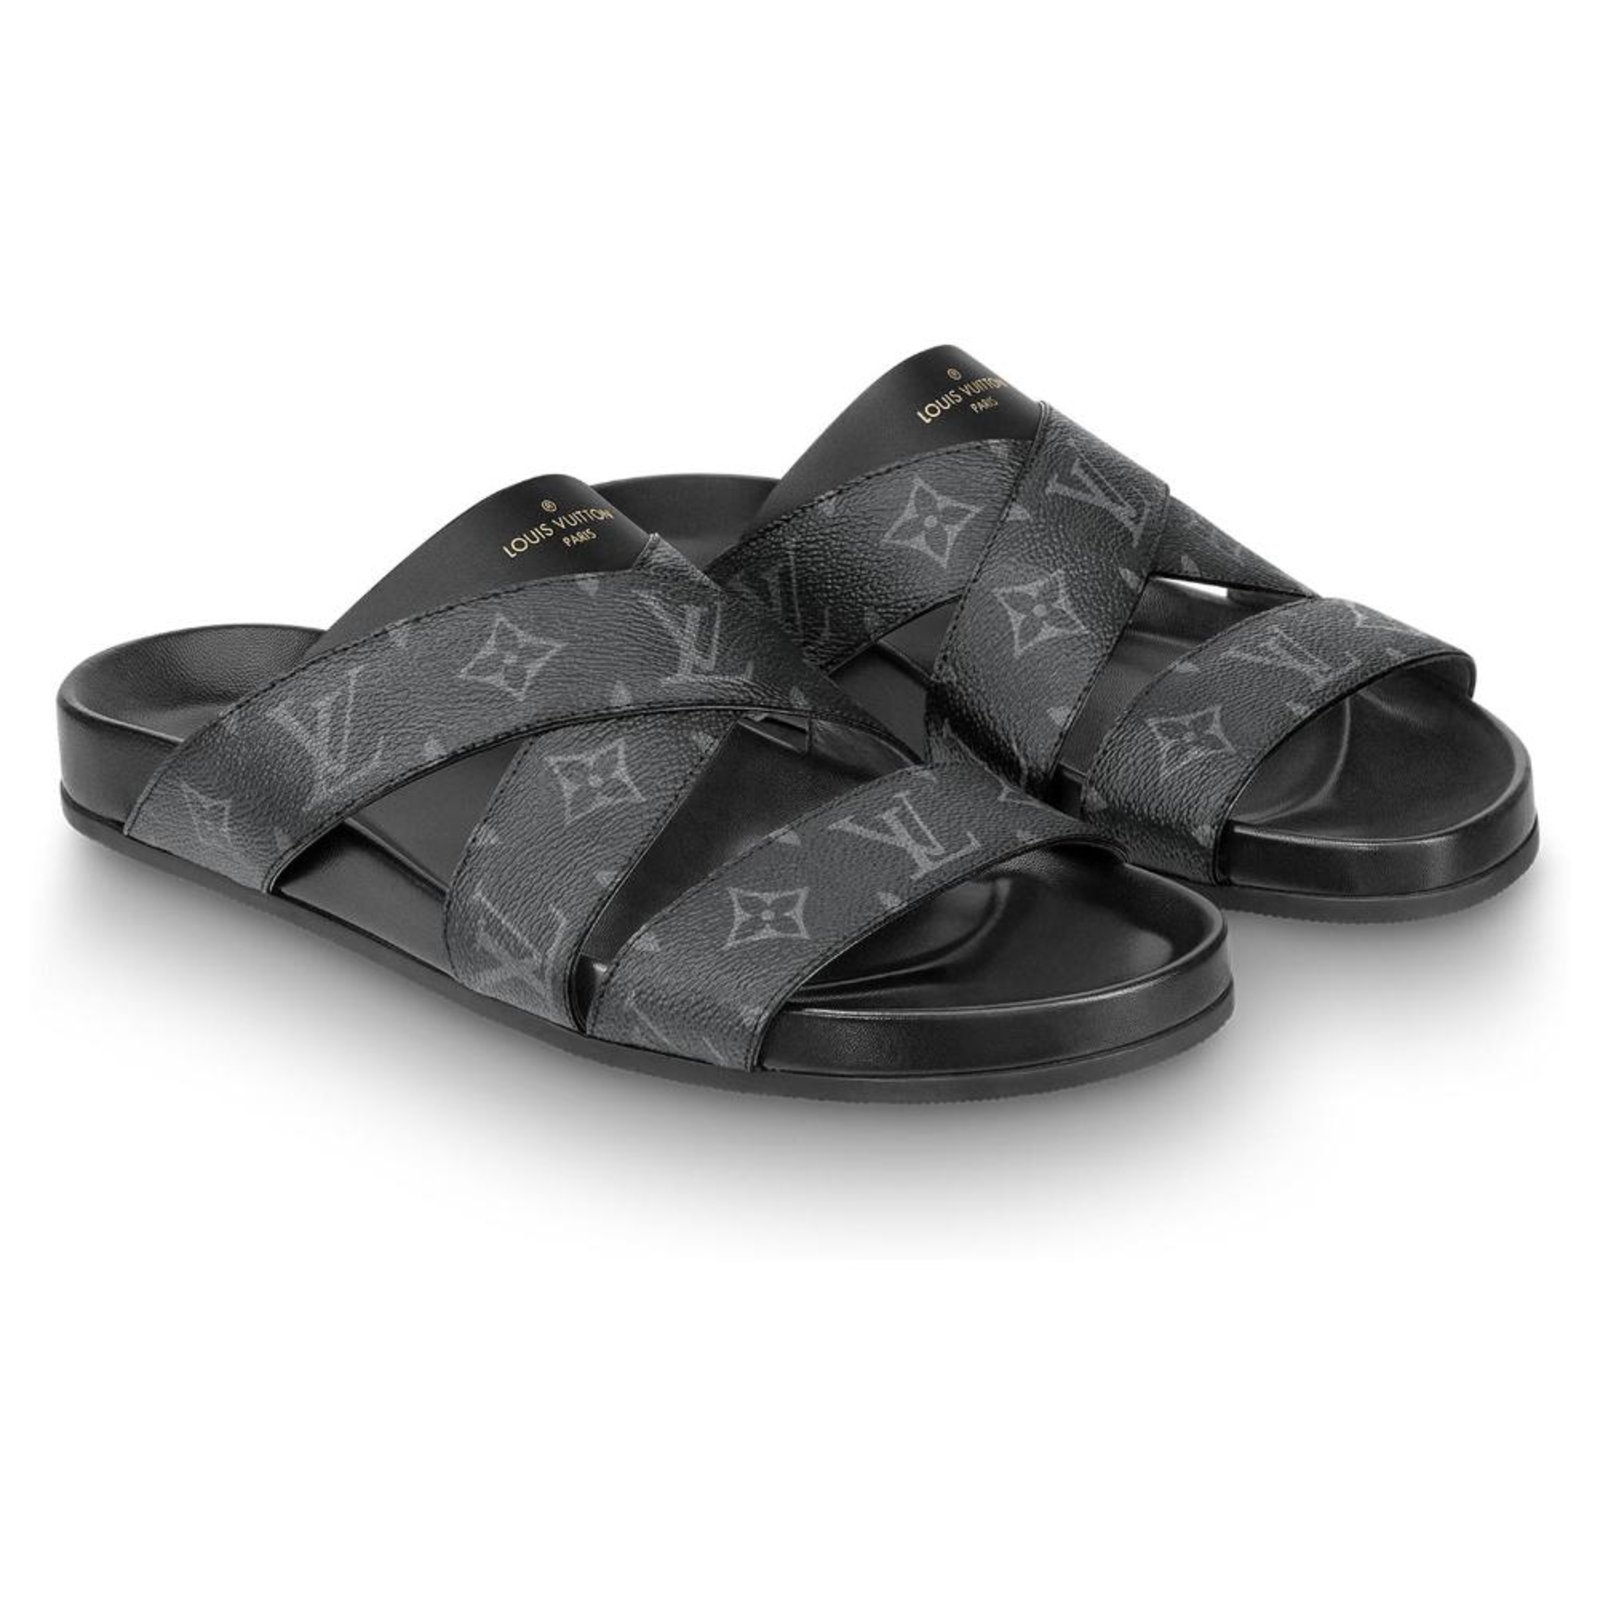 LOUIS VUITTON Black LV Mirabeau Mule Sandals Size 10.5 Men